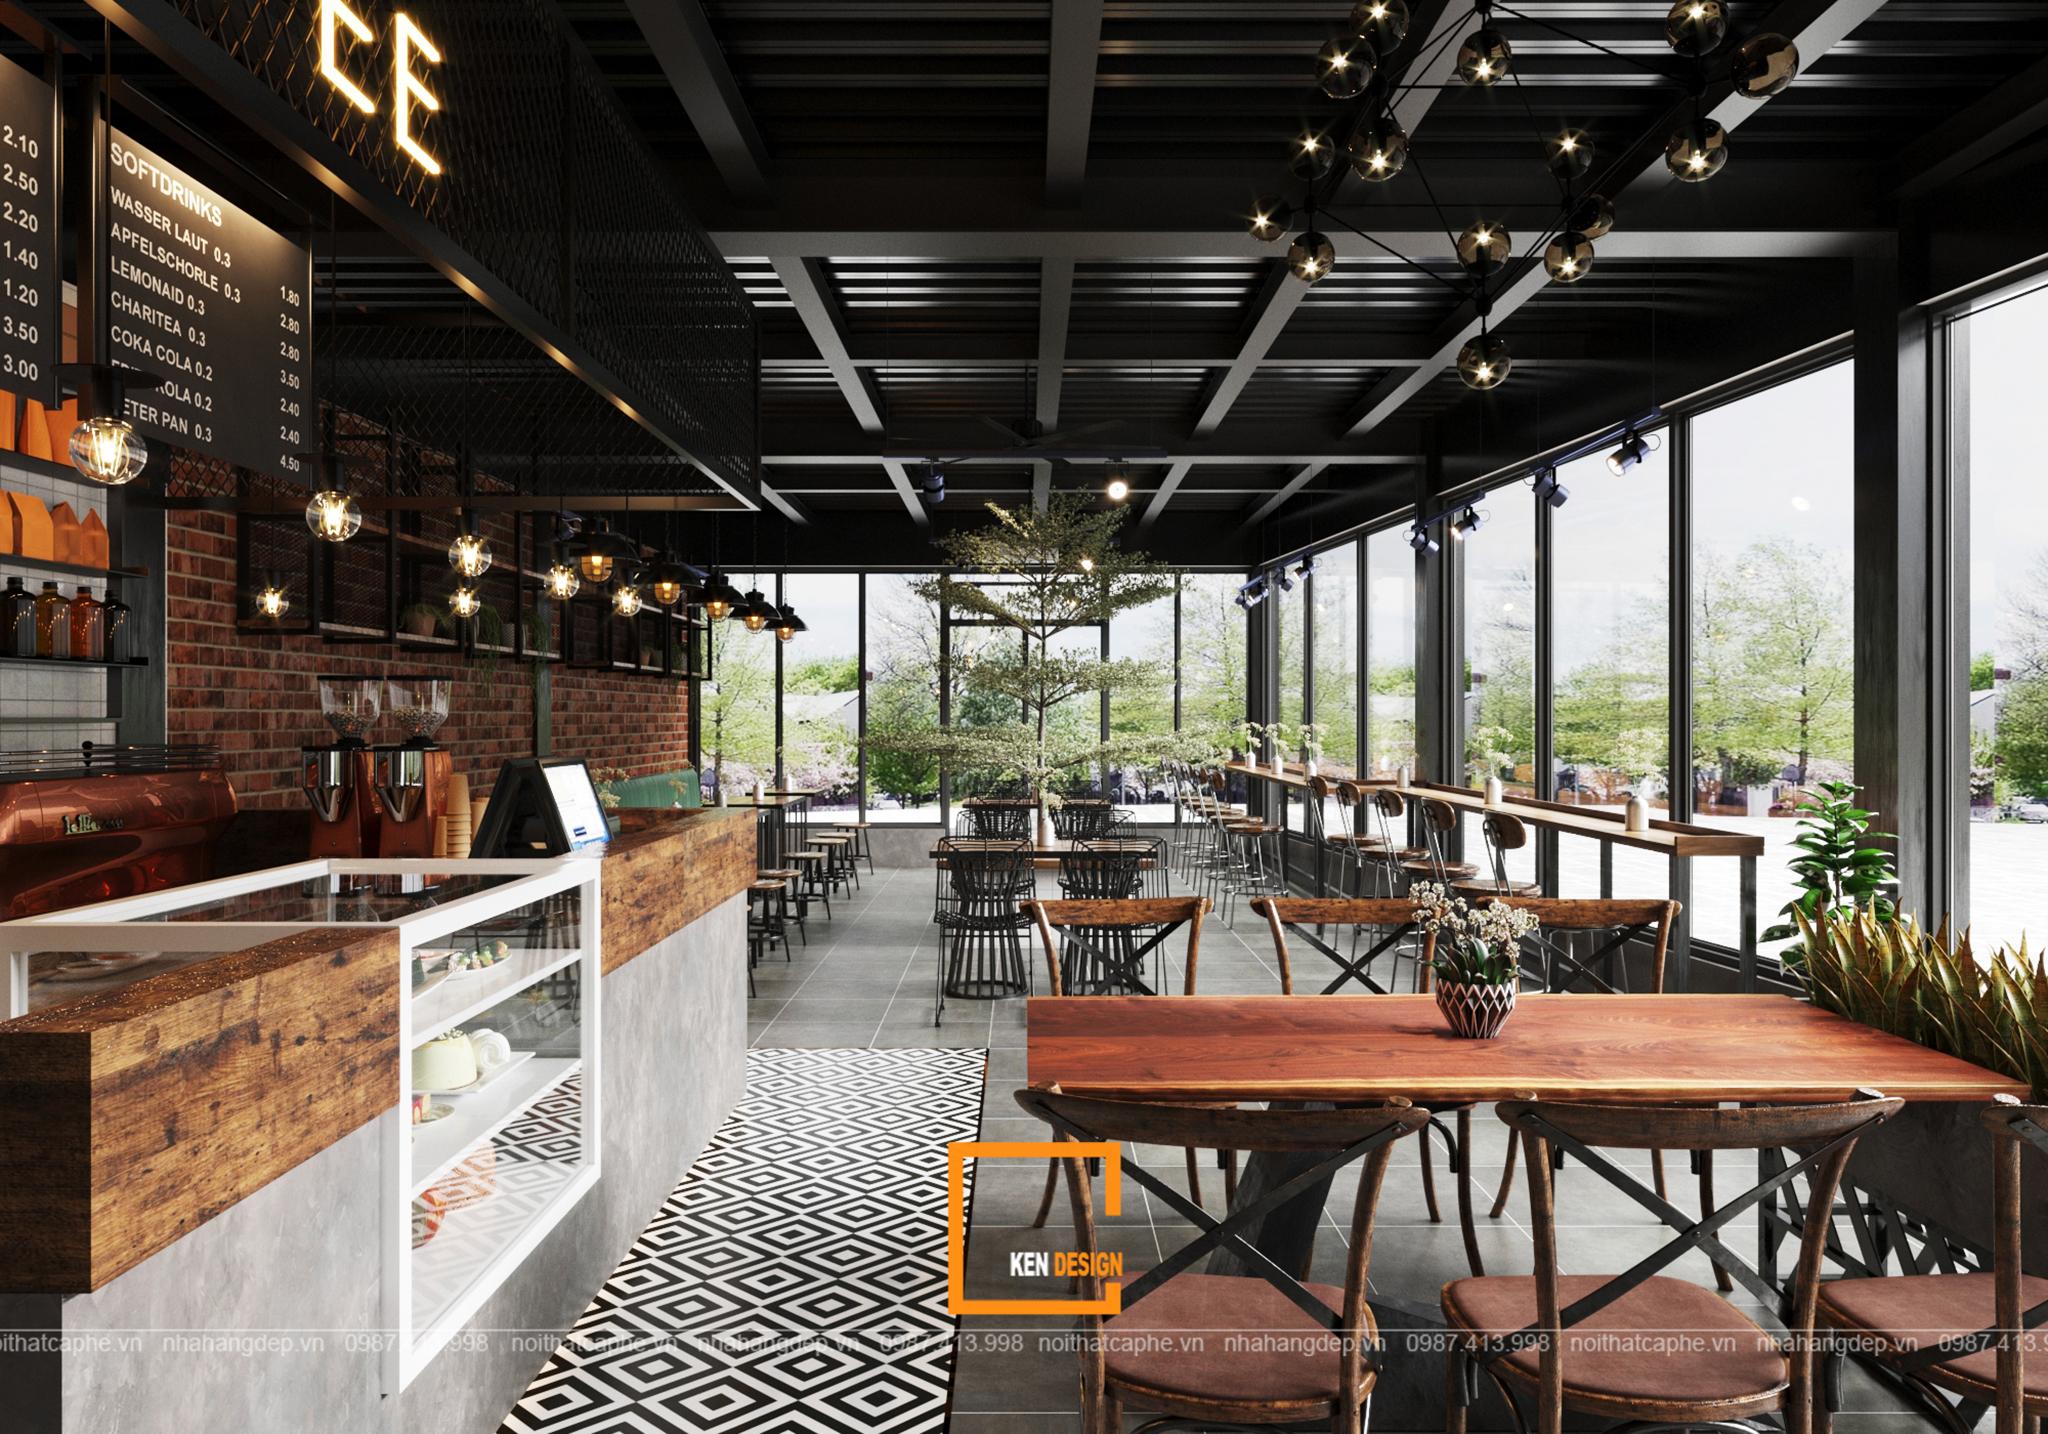 Bạn đang tìm kiếm một thiết kế quán cafe độc đáo, hiện đại và có phong cách riêng? Với dịch vụ thiết kế quán cafe Urban Coffee của chúng tôi, bạn sẽ được trải nghiệm không gian với gam màu xanh đen nổi bật, phối cảnh đẹp mắt và trang thiết bị đầy đủ.